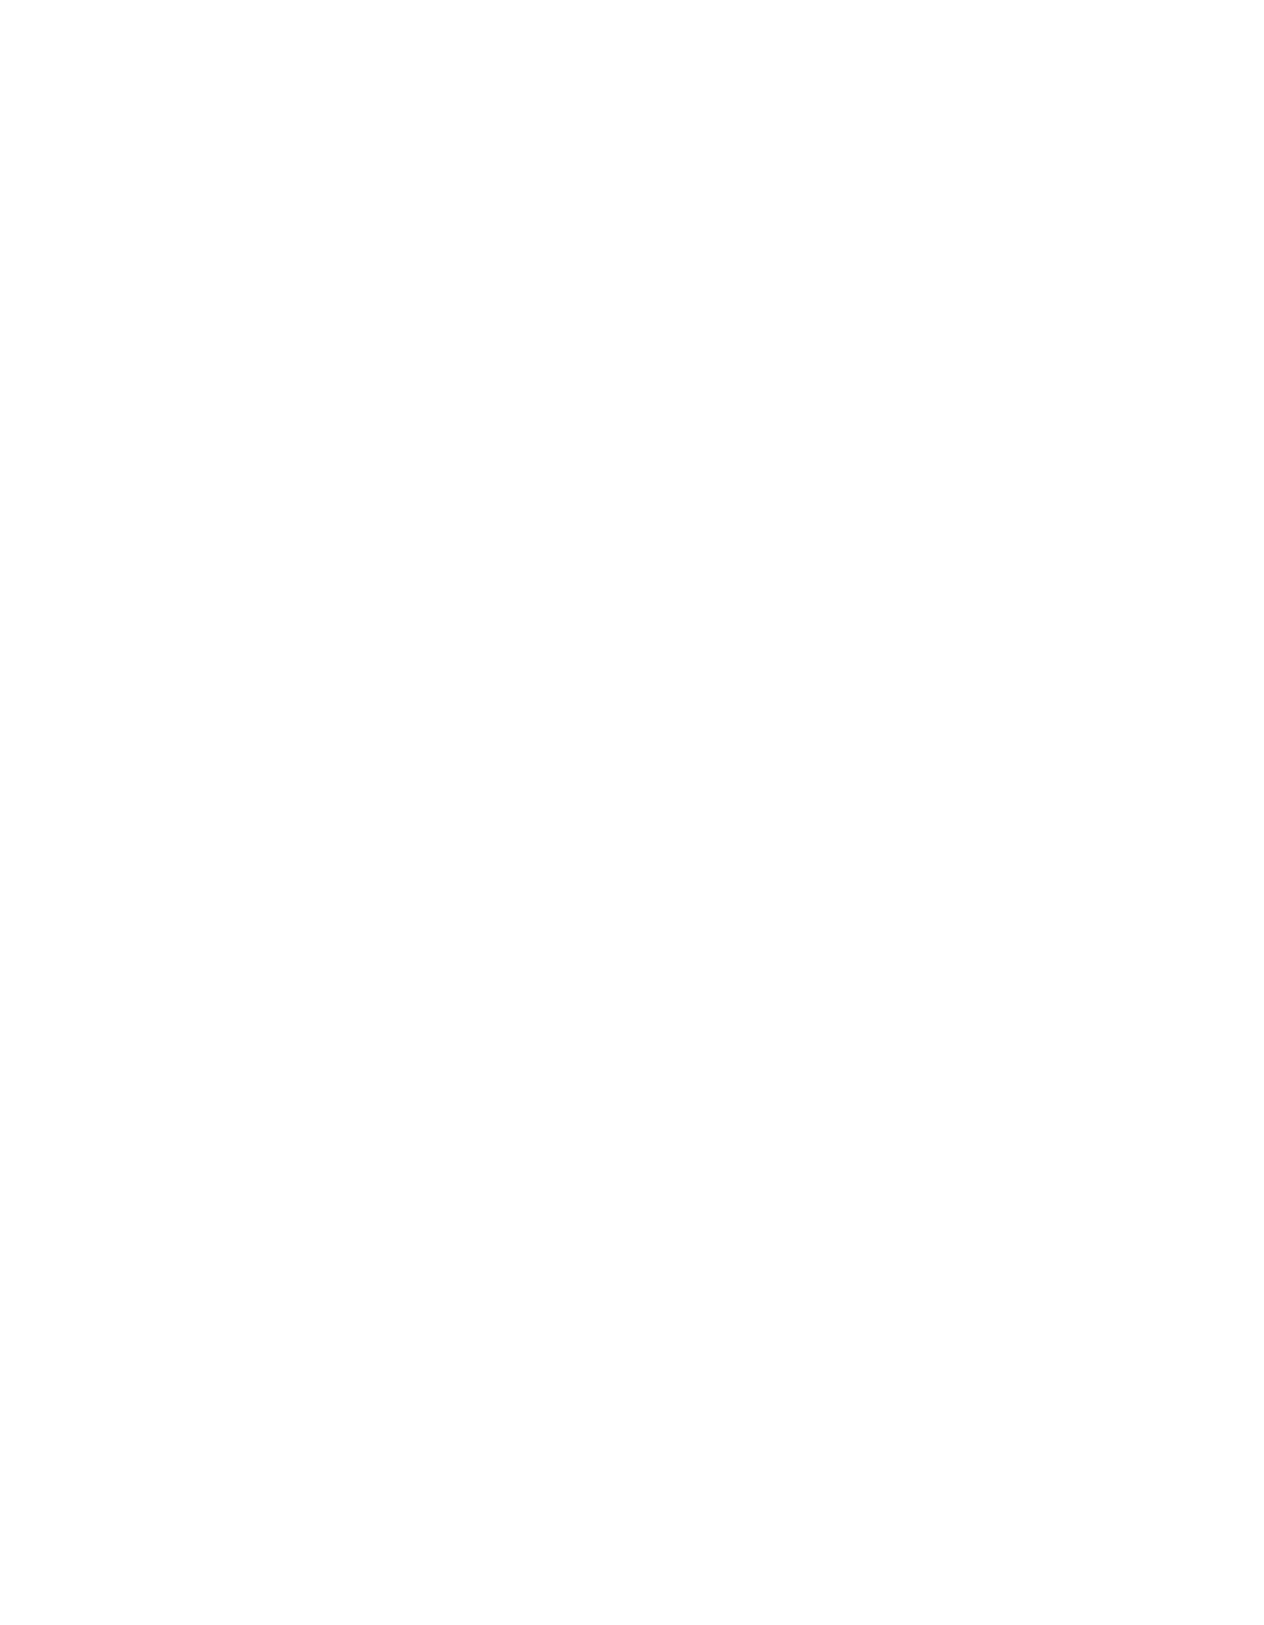 Cosan logo pour fonds sombres (PNG transparent)